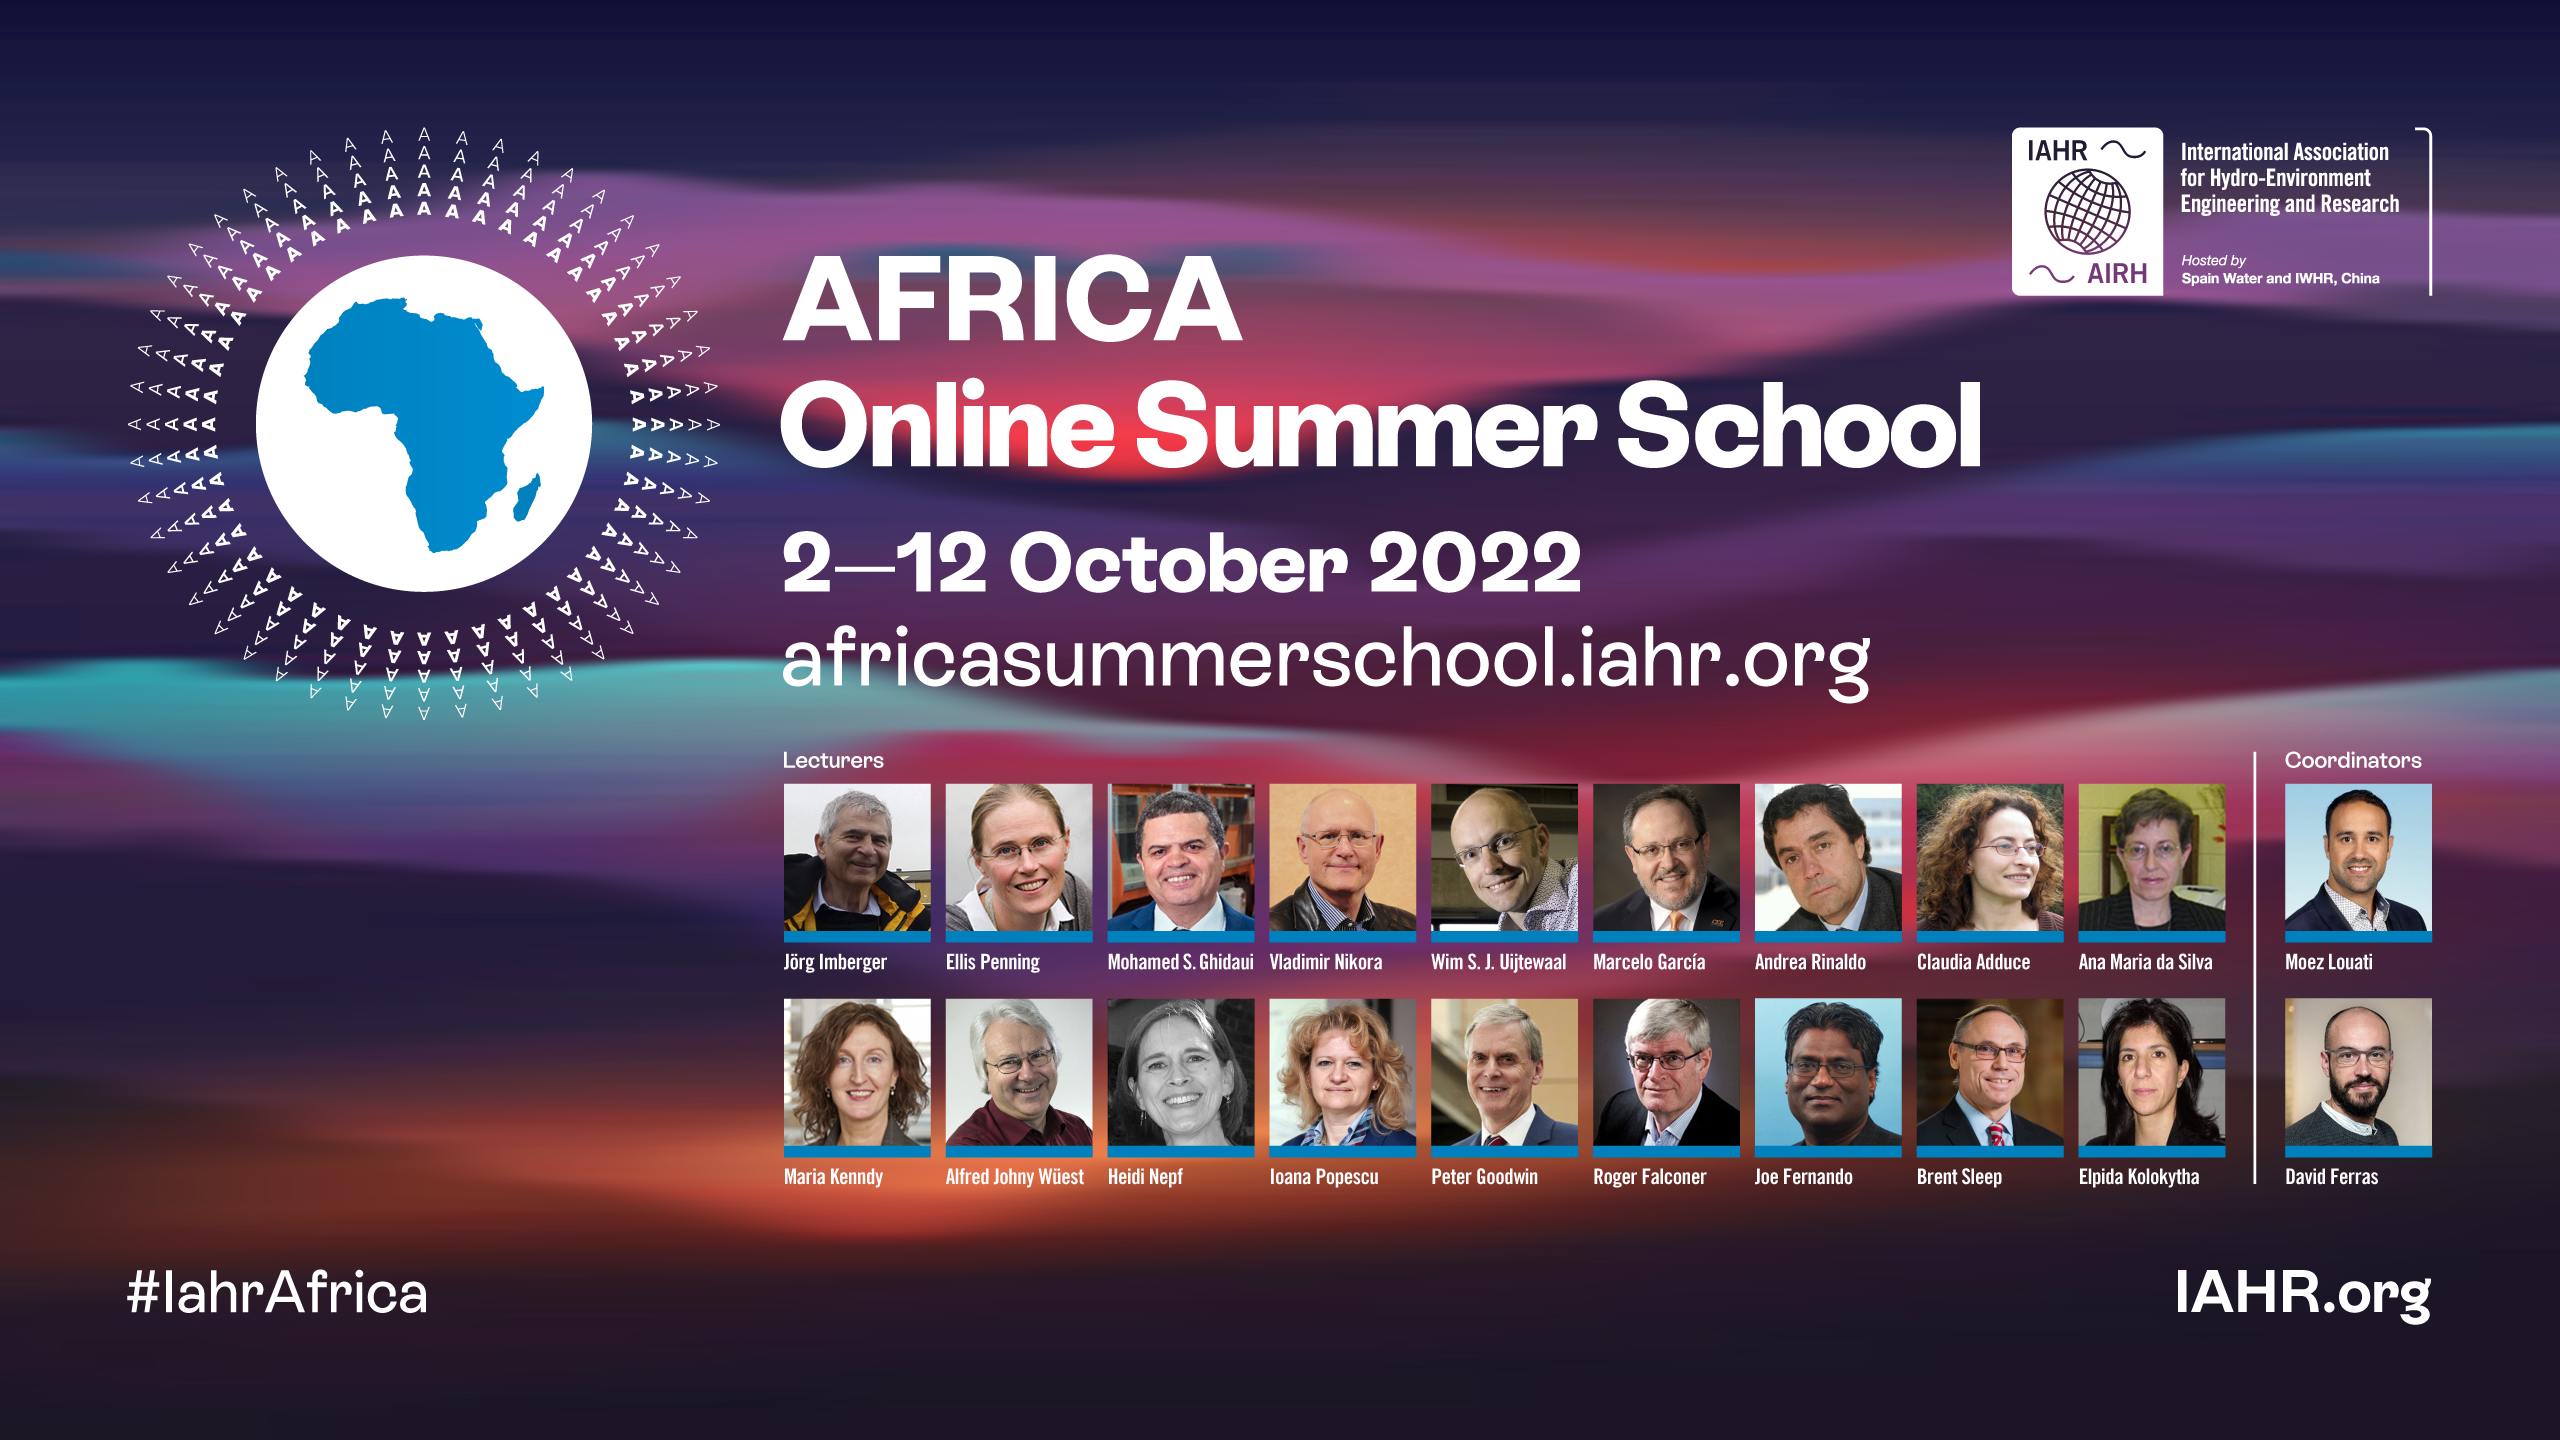 IAHR Africa Online summer School banner (1200x630 px)